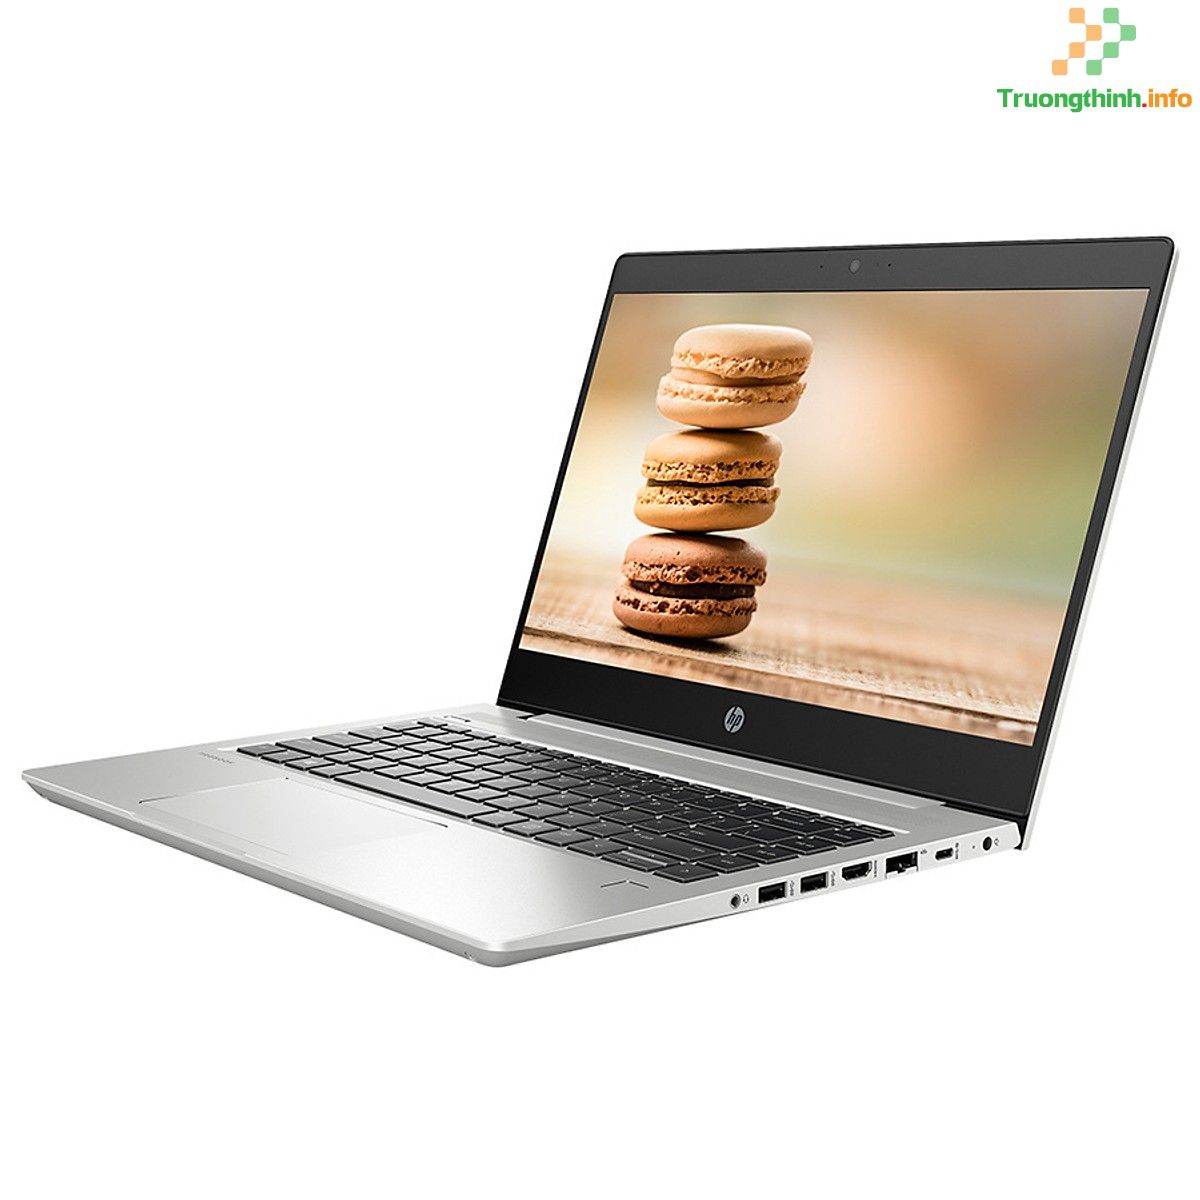 mua bán thay Pin laptop Hp Probook 440 G6 Giá Rẻ | Vi Tính Trường Thịnh 